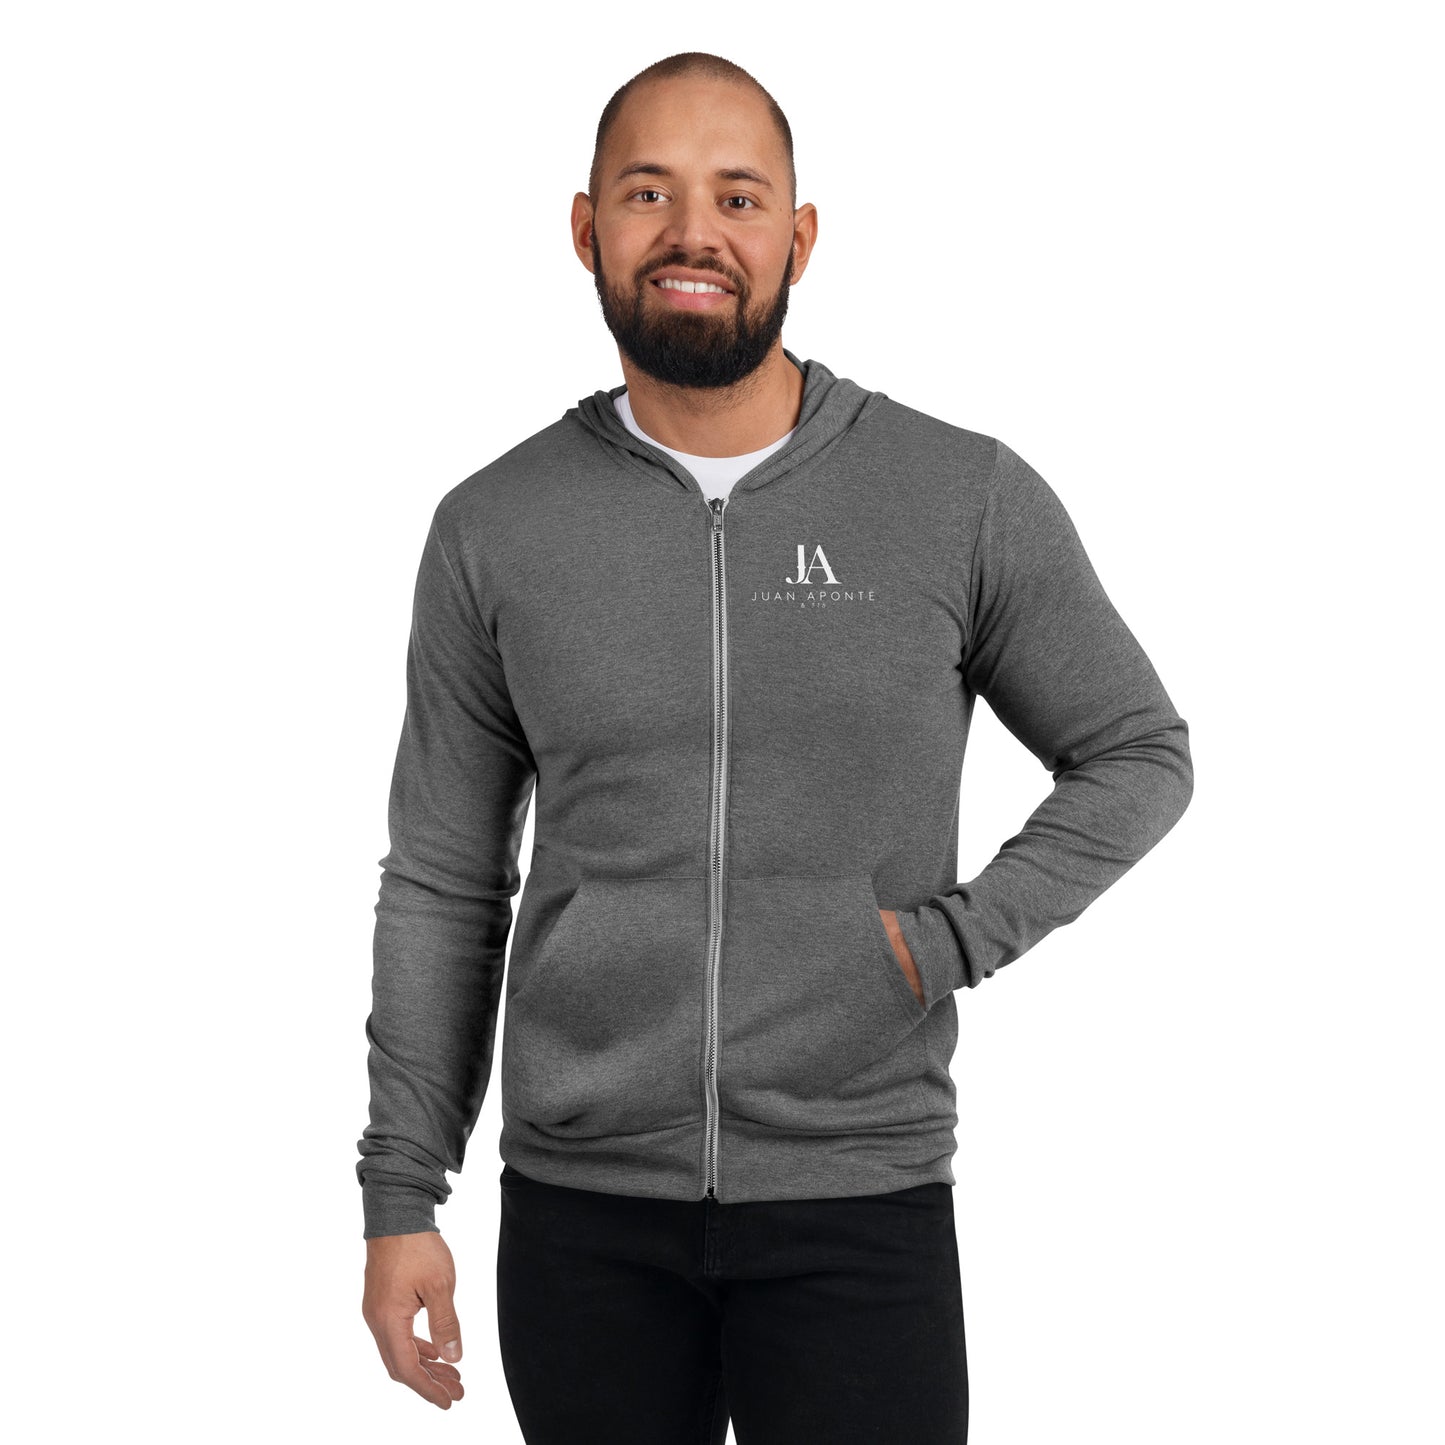 JUAN APONTE - Unisex zip hoodie